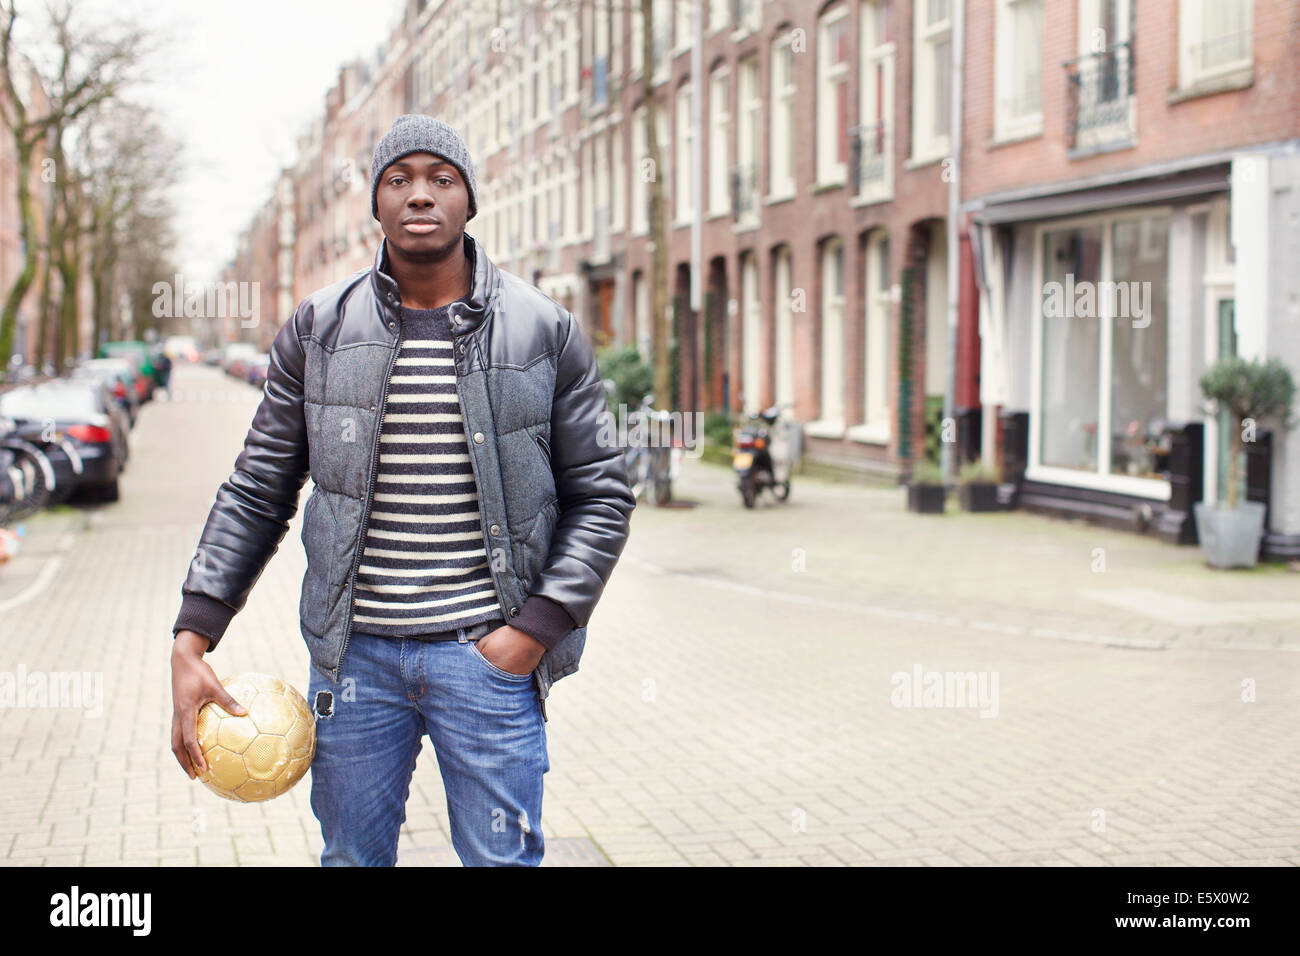 Portrait de jeune homme sur street holding soccer ball, Amsterdam, Pays-Bas Banque D'Images